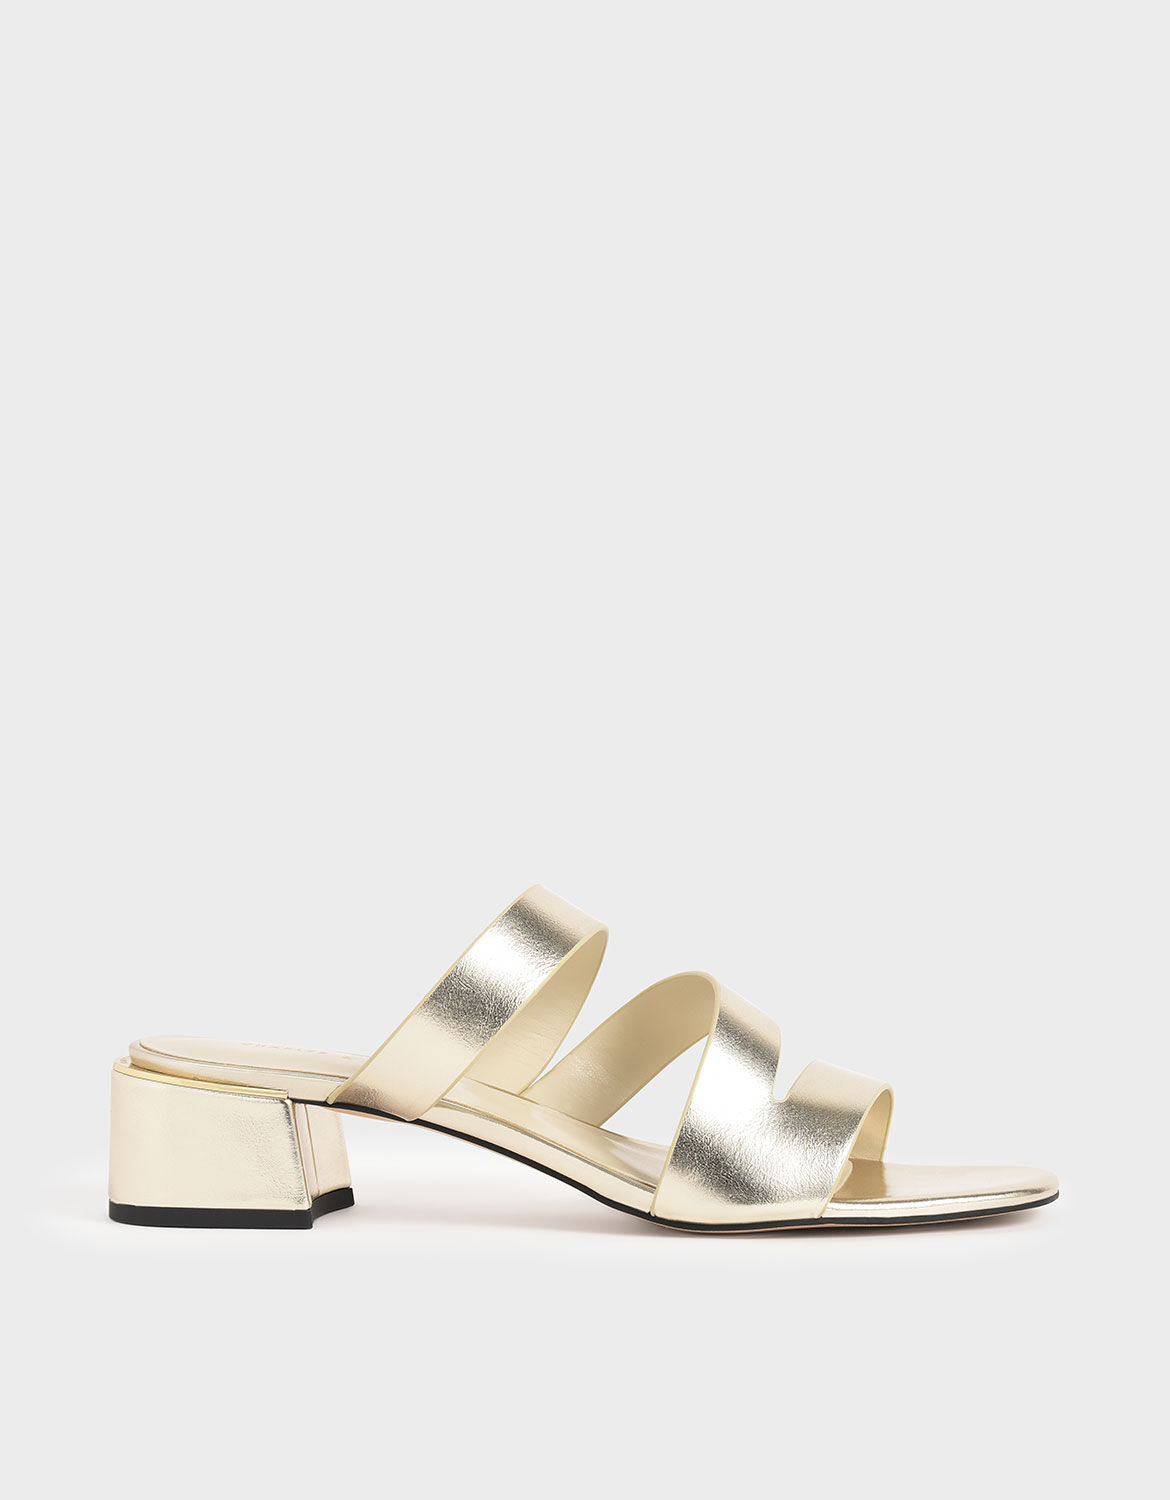 metallic sandal heels